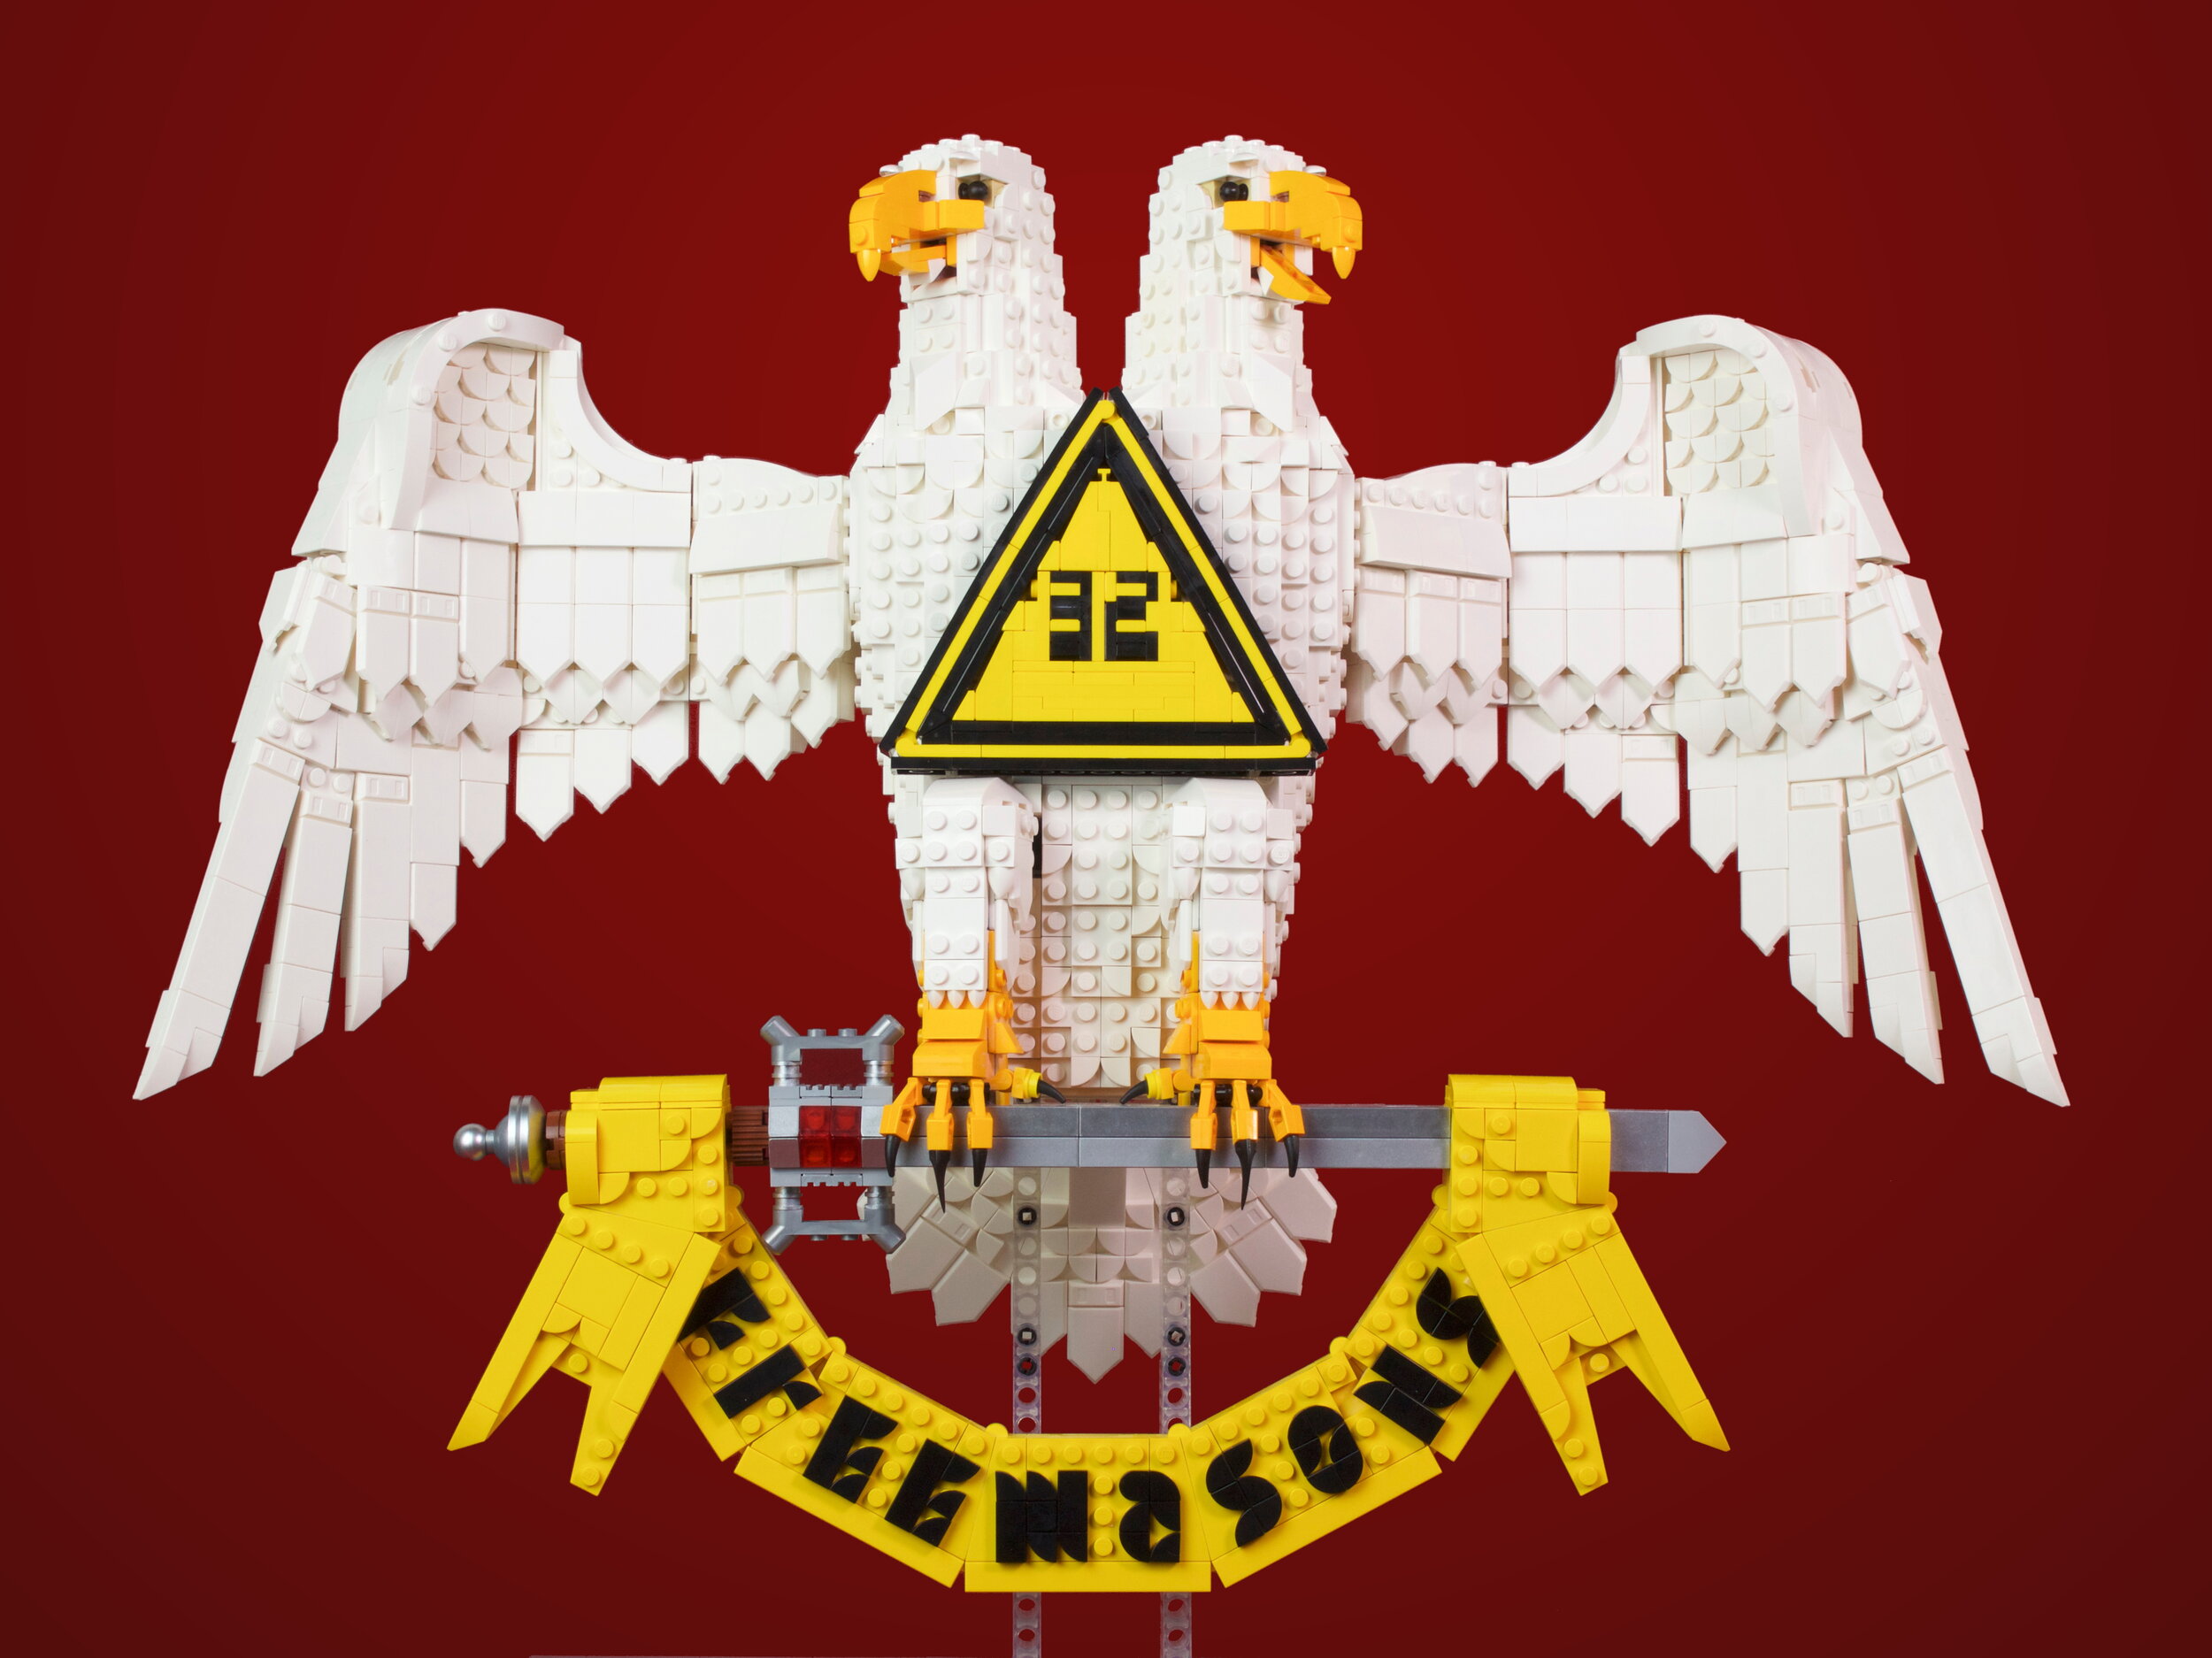 33rd Degree Eagle Emblem Flat No Post 